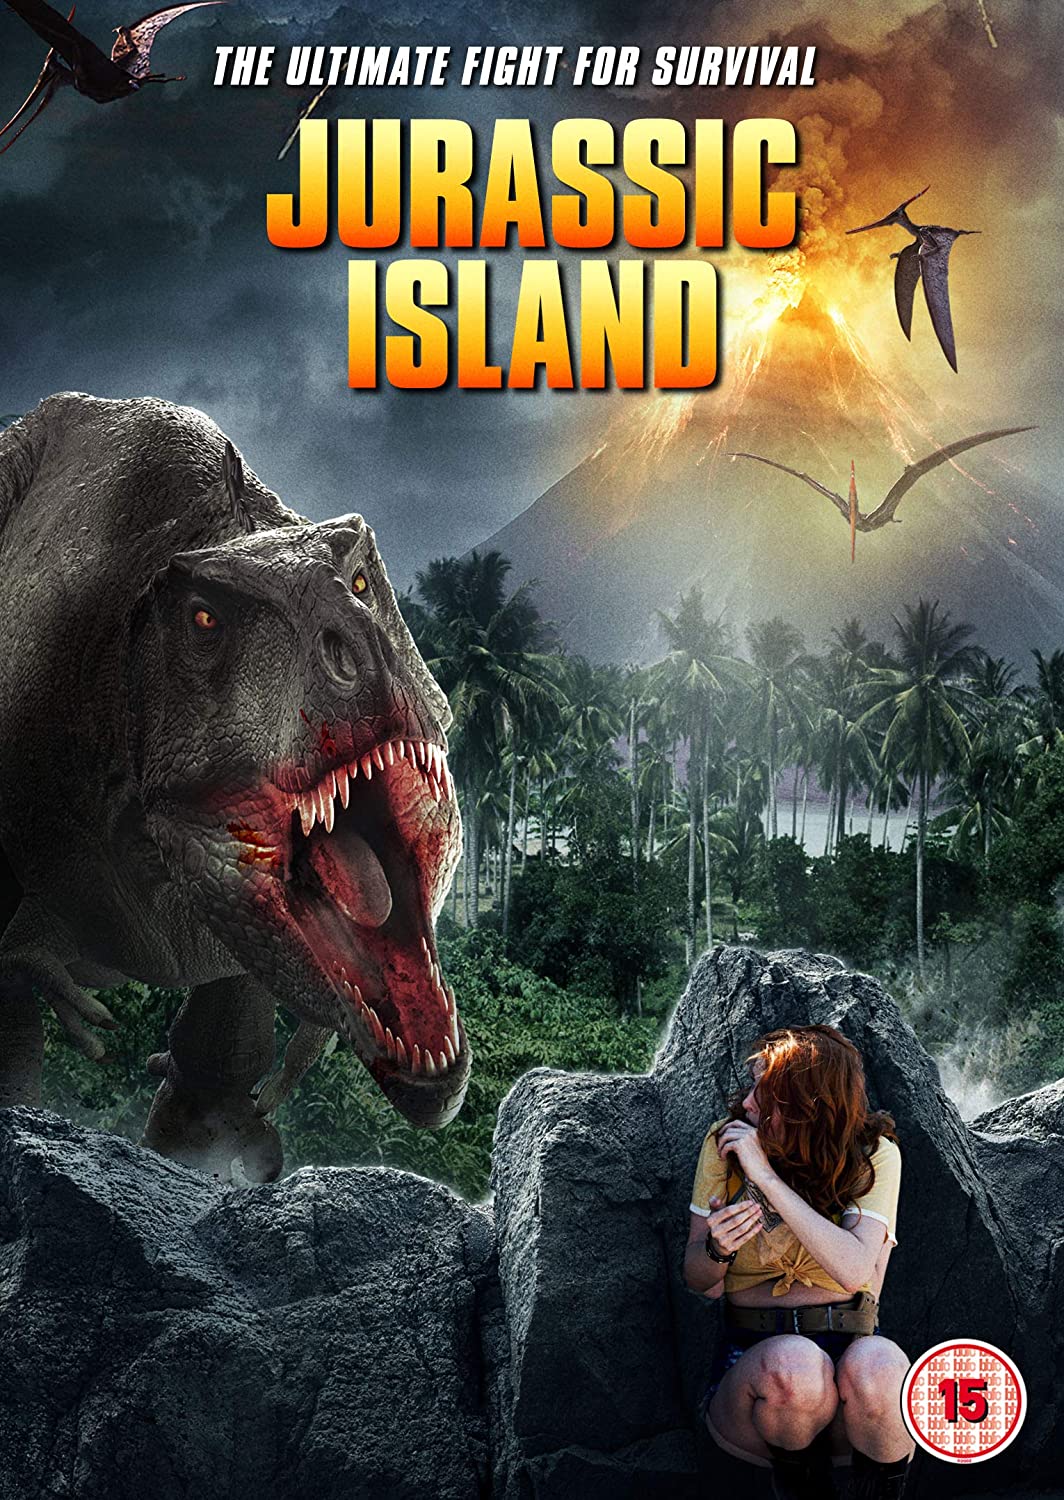 مشاهدة فيلم Jurassic Island 2022 مترجم اون لاين